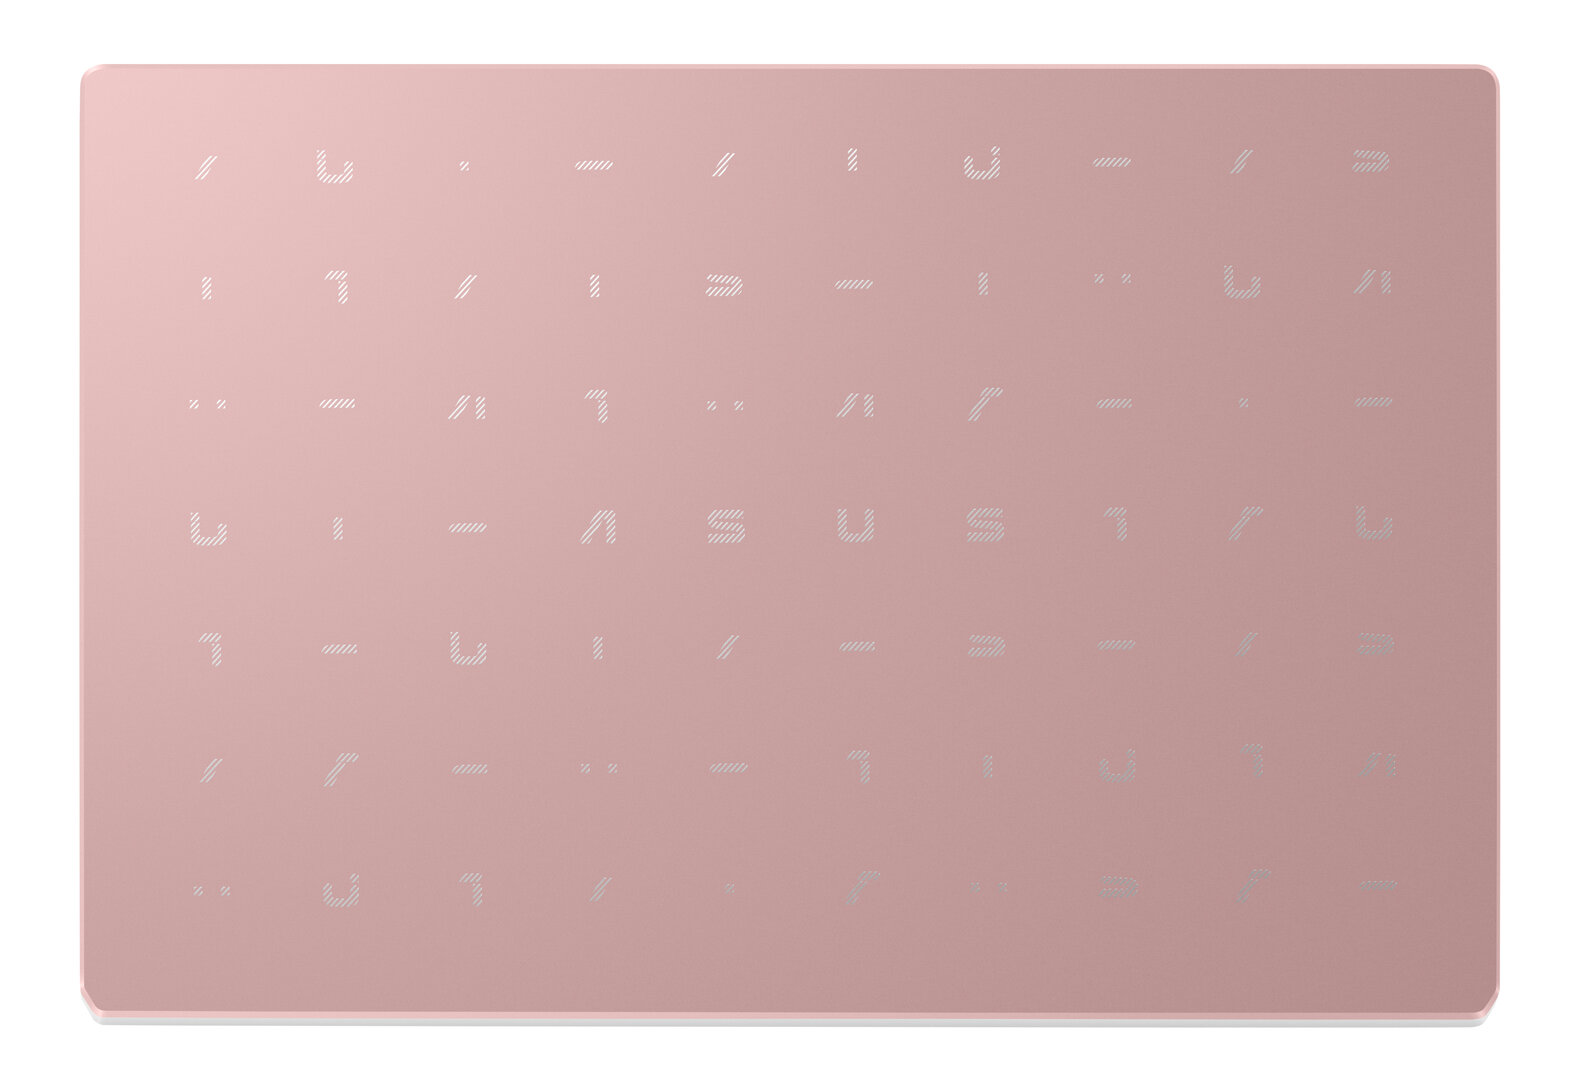 Asus VivoBook 12 (L210) – Rose Pink